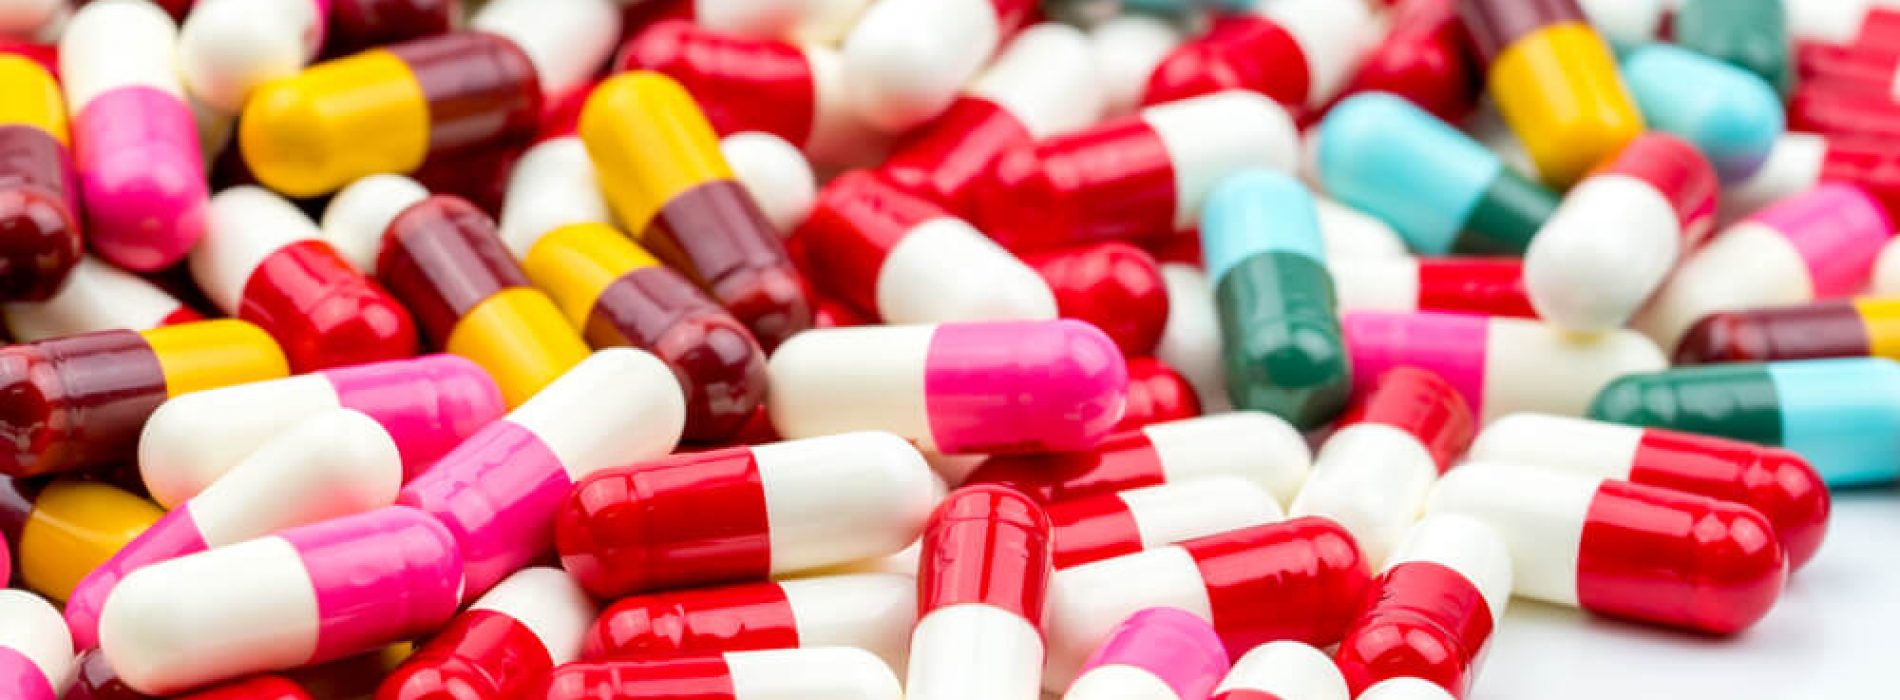 Vaak voorgeschreven antibiotica kunnen leiden tot hartproblemen